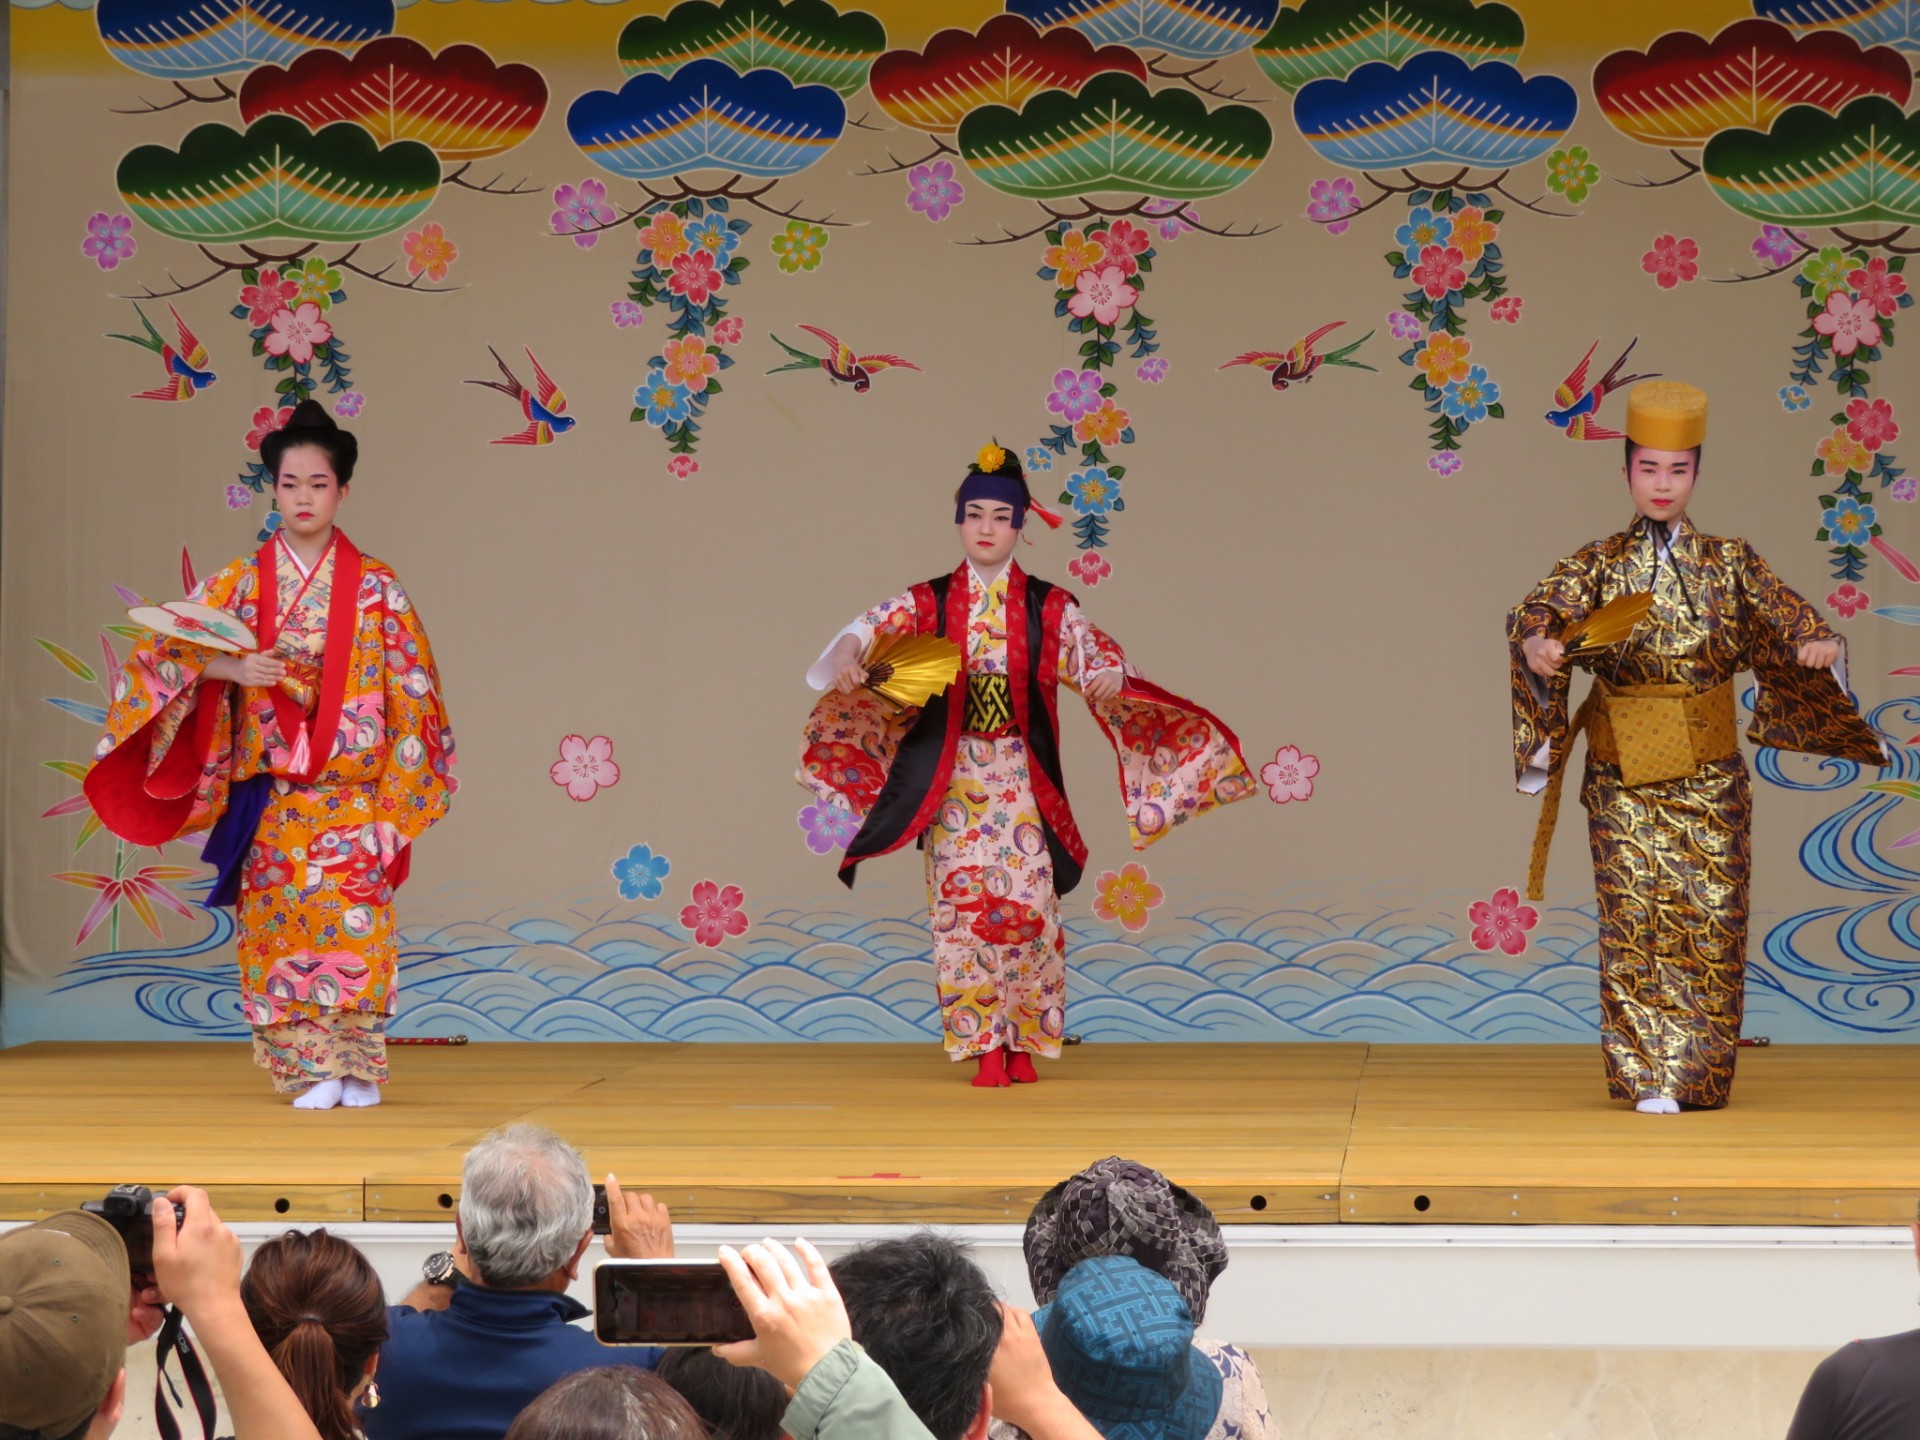 おきなわ郷土村イベント 伝統芸能ステージ「琉球舞踊」 | 海洋博公園 